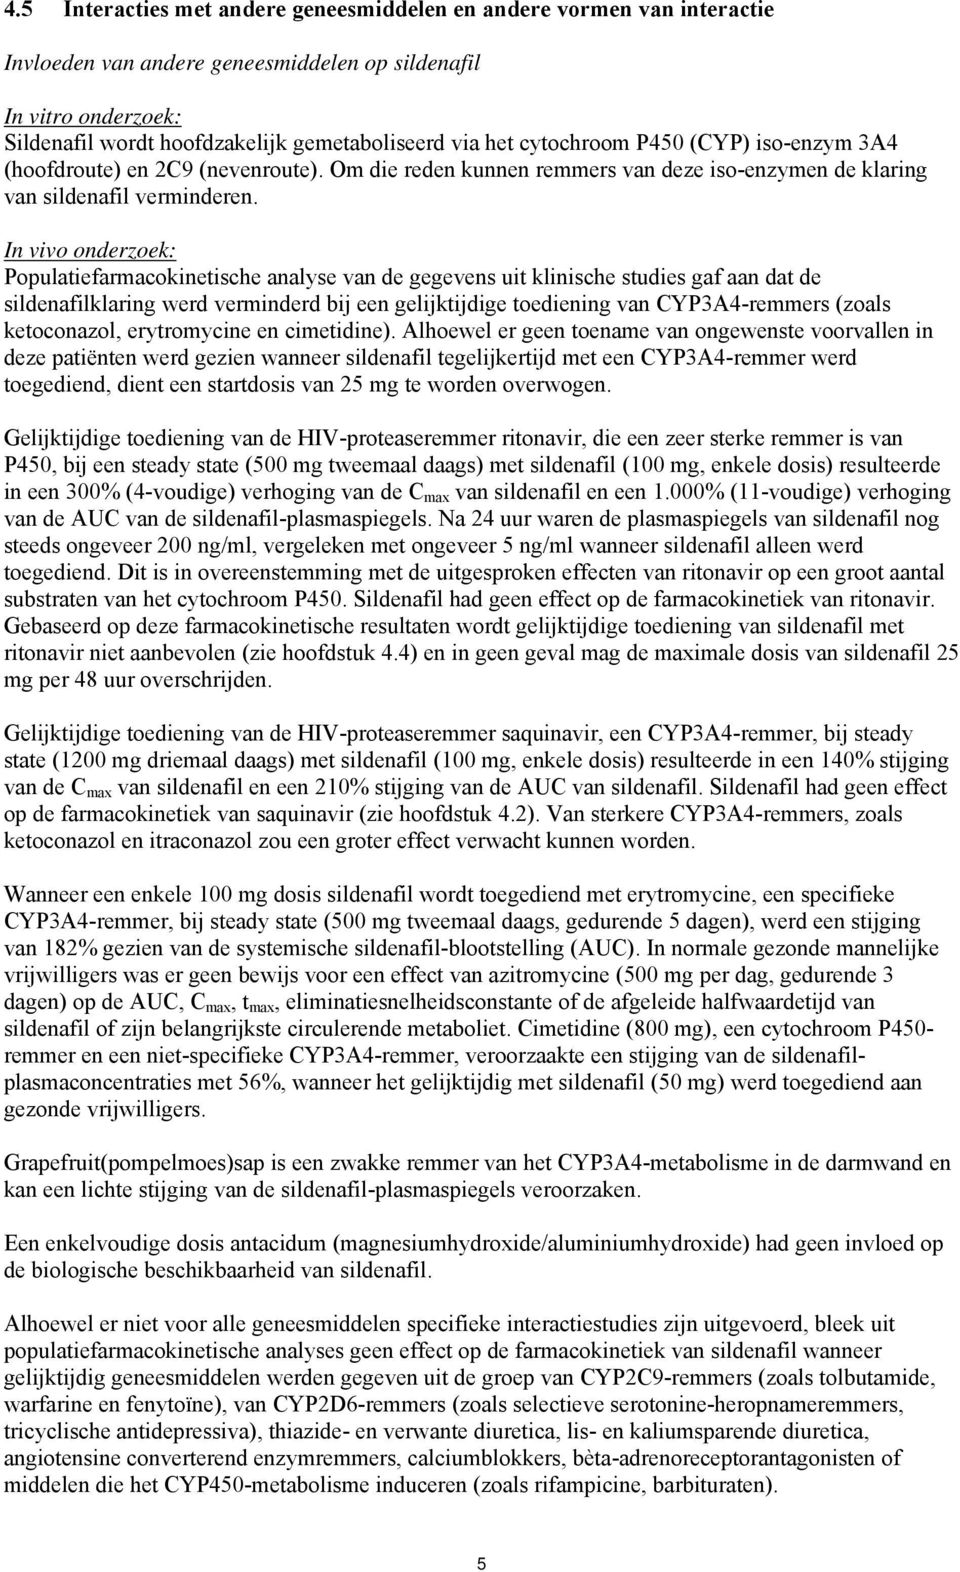 In vivo onderzoek: Populatiefarmacokinetische analyse van de gegevens uit klinische studies gaf aan dat de sildenafilklaring werd verminderd bij een gelijktijdige toediening van CYP3A4-remmers (zoals